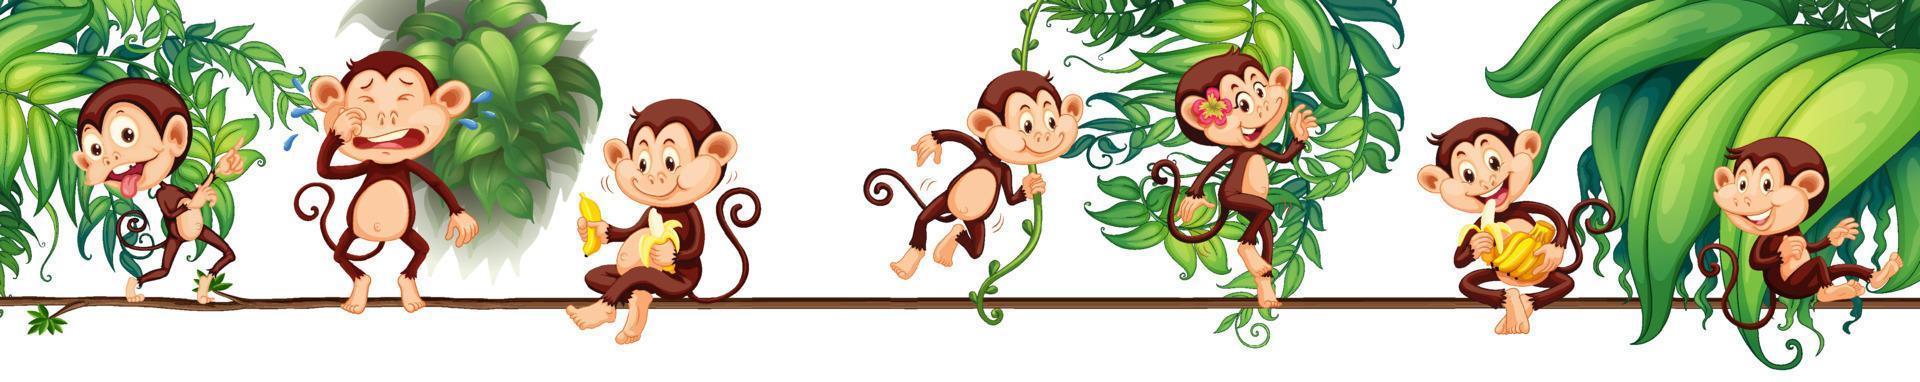 Diferentes personajes de dibujos animados de monos en la cuerda con hojas tropicales. vector